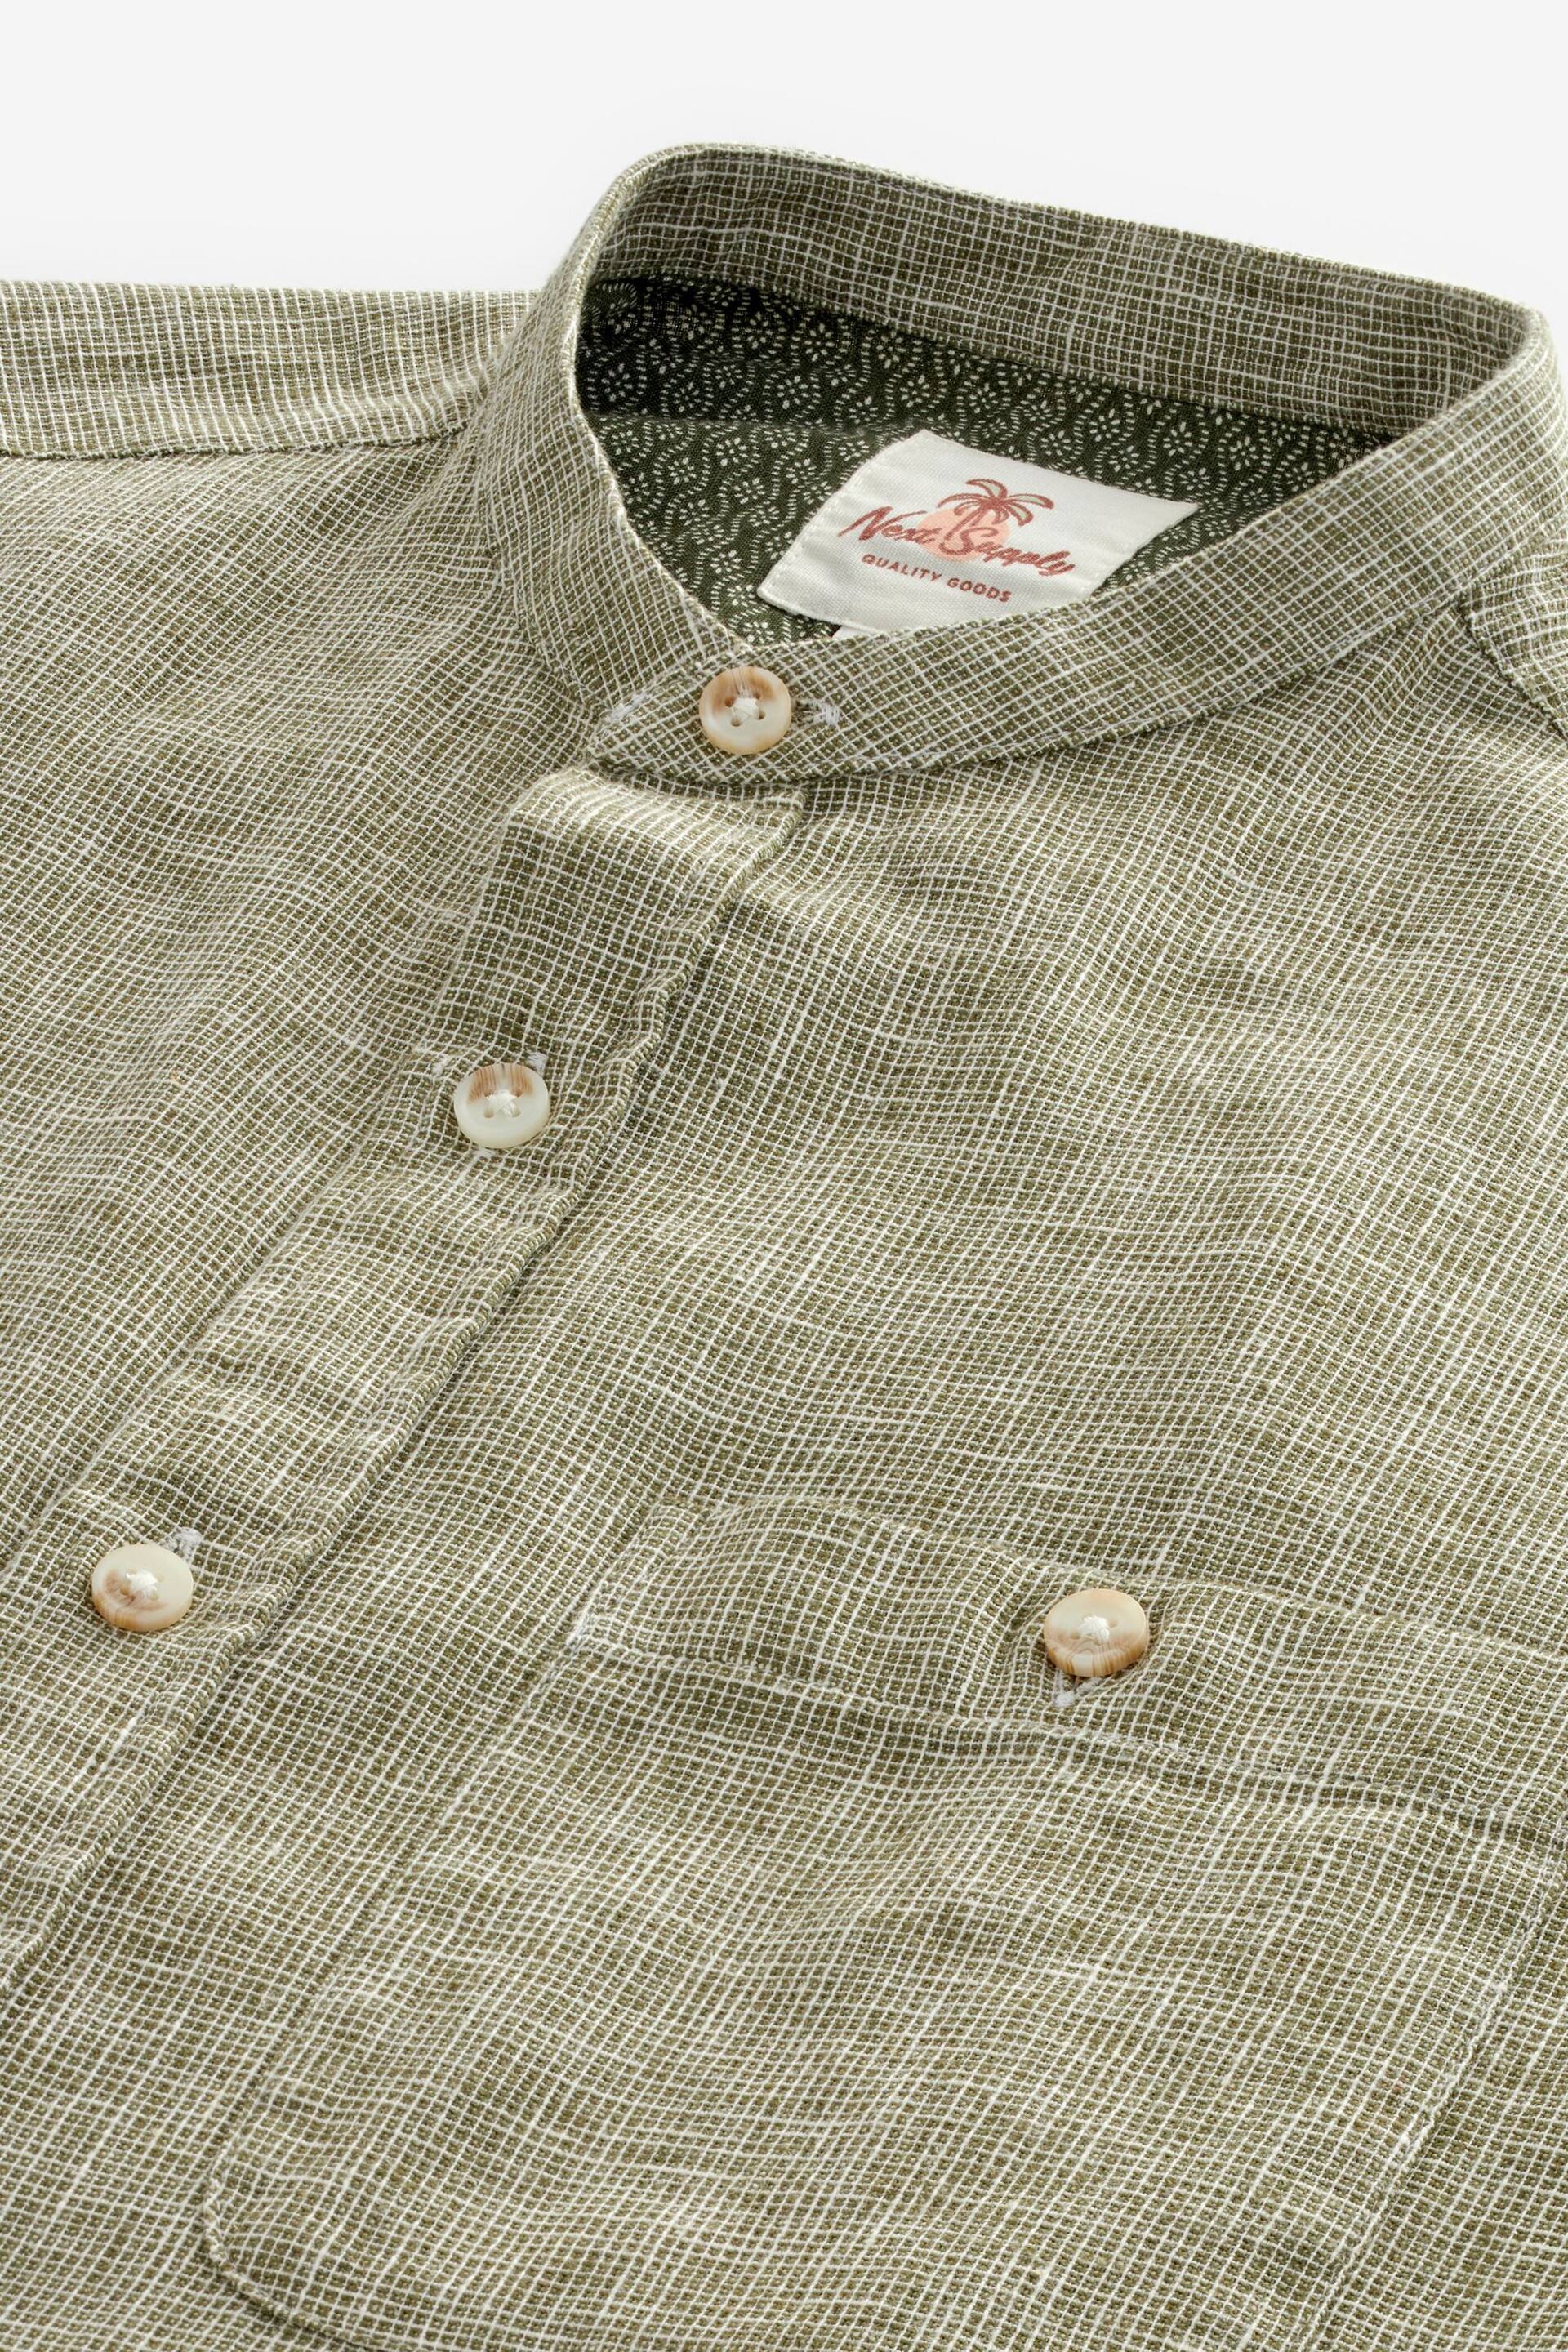 Green Grandad Collar Linen Blend Long Sleeve Shirt - Image 7 of 8